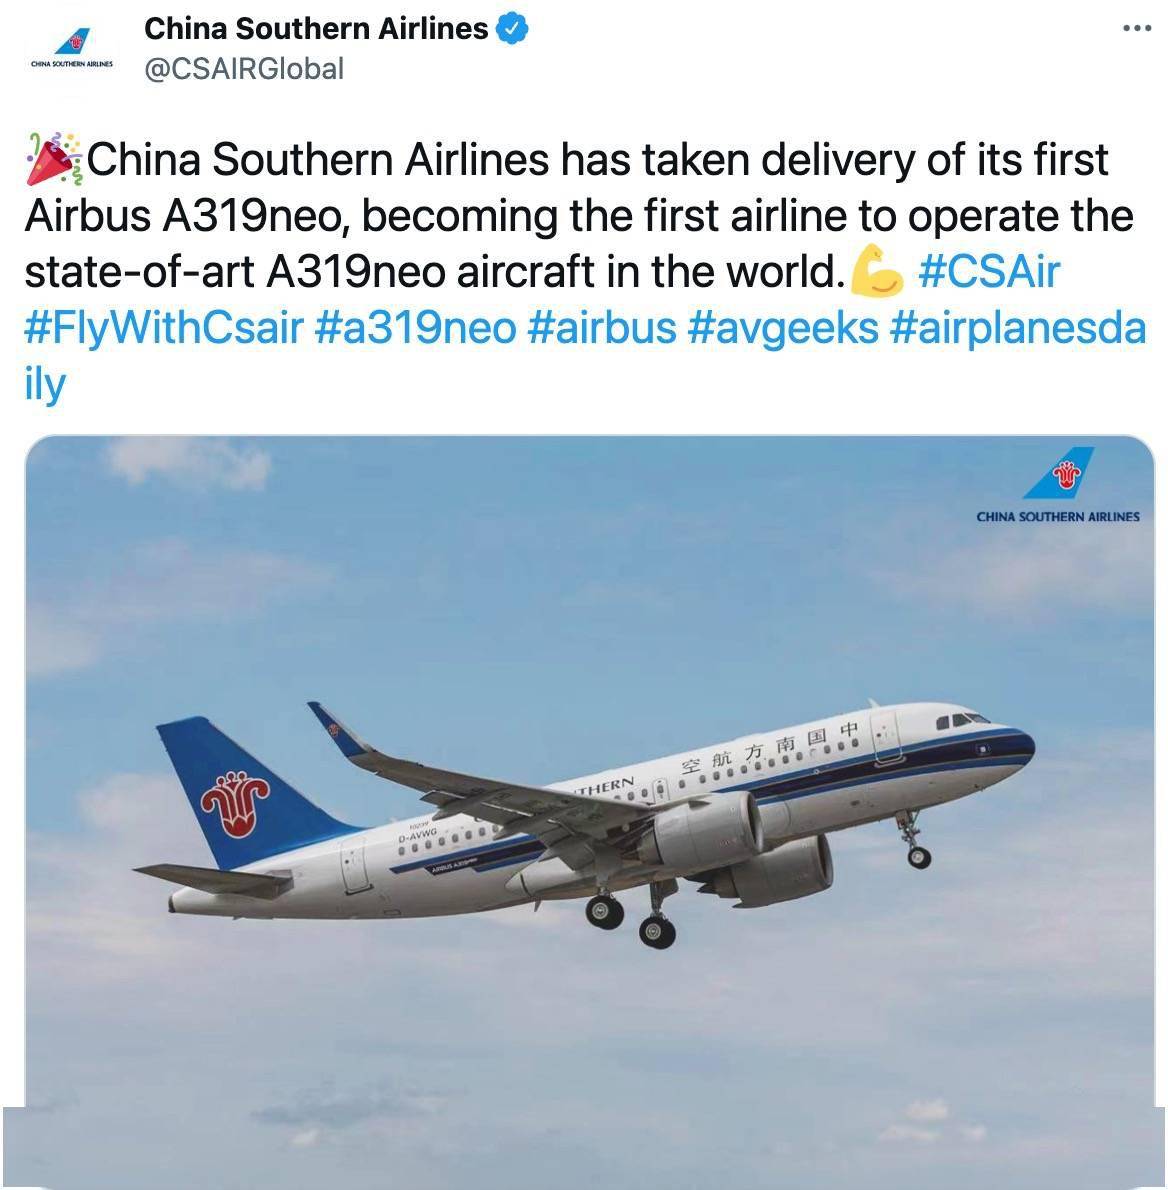 南航也在社交媒体上发文"中国南方航空接收首架a319neo,成为全球首家